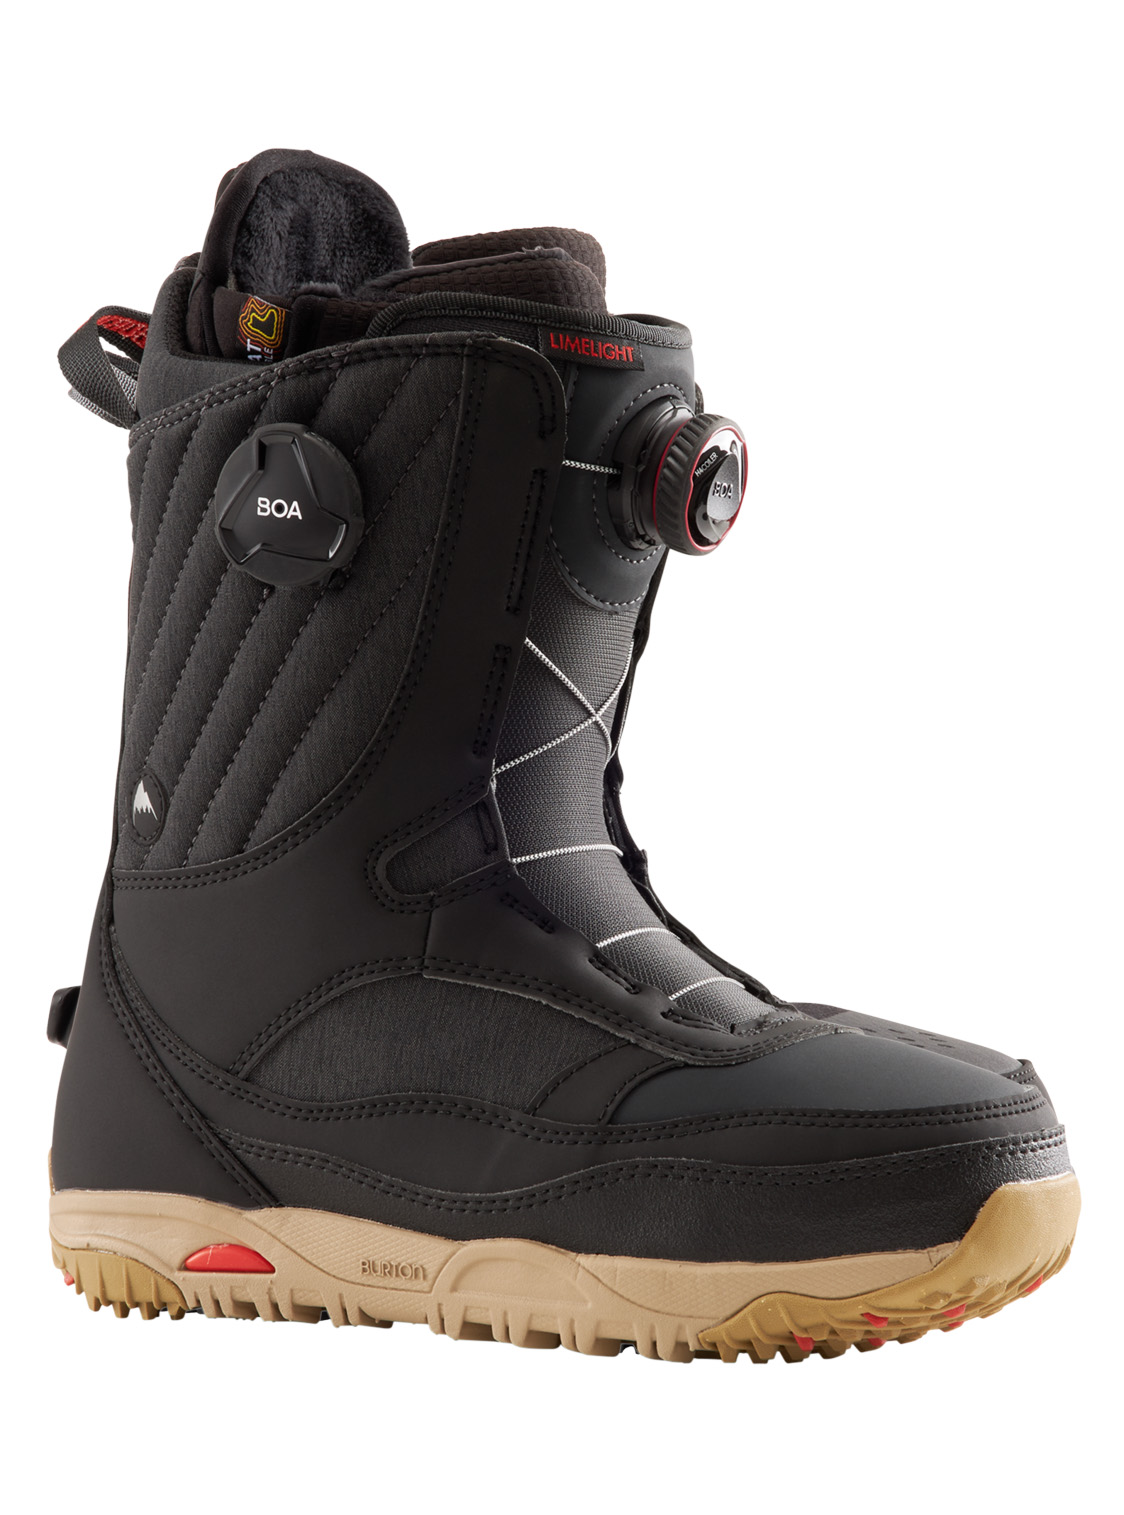 Burton 21/22 Snowboard Boots